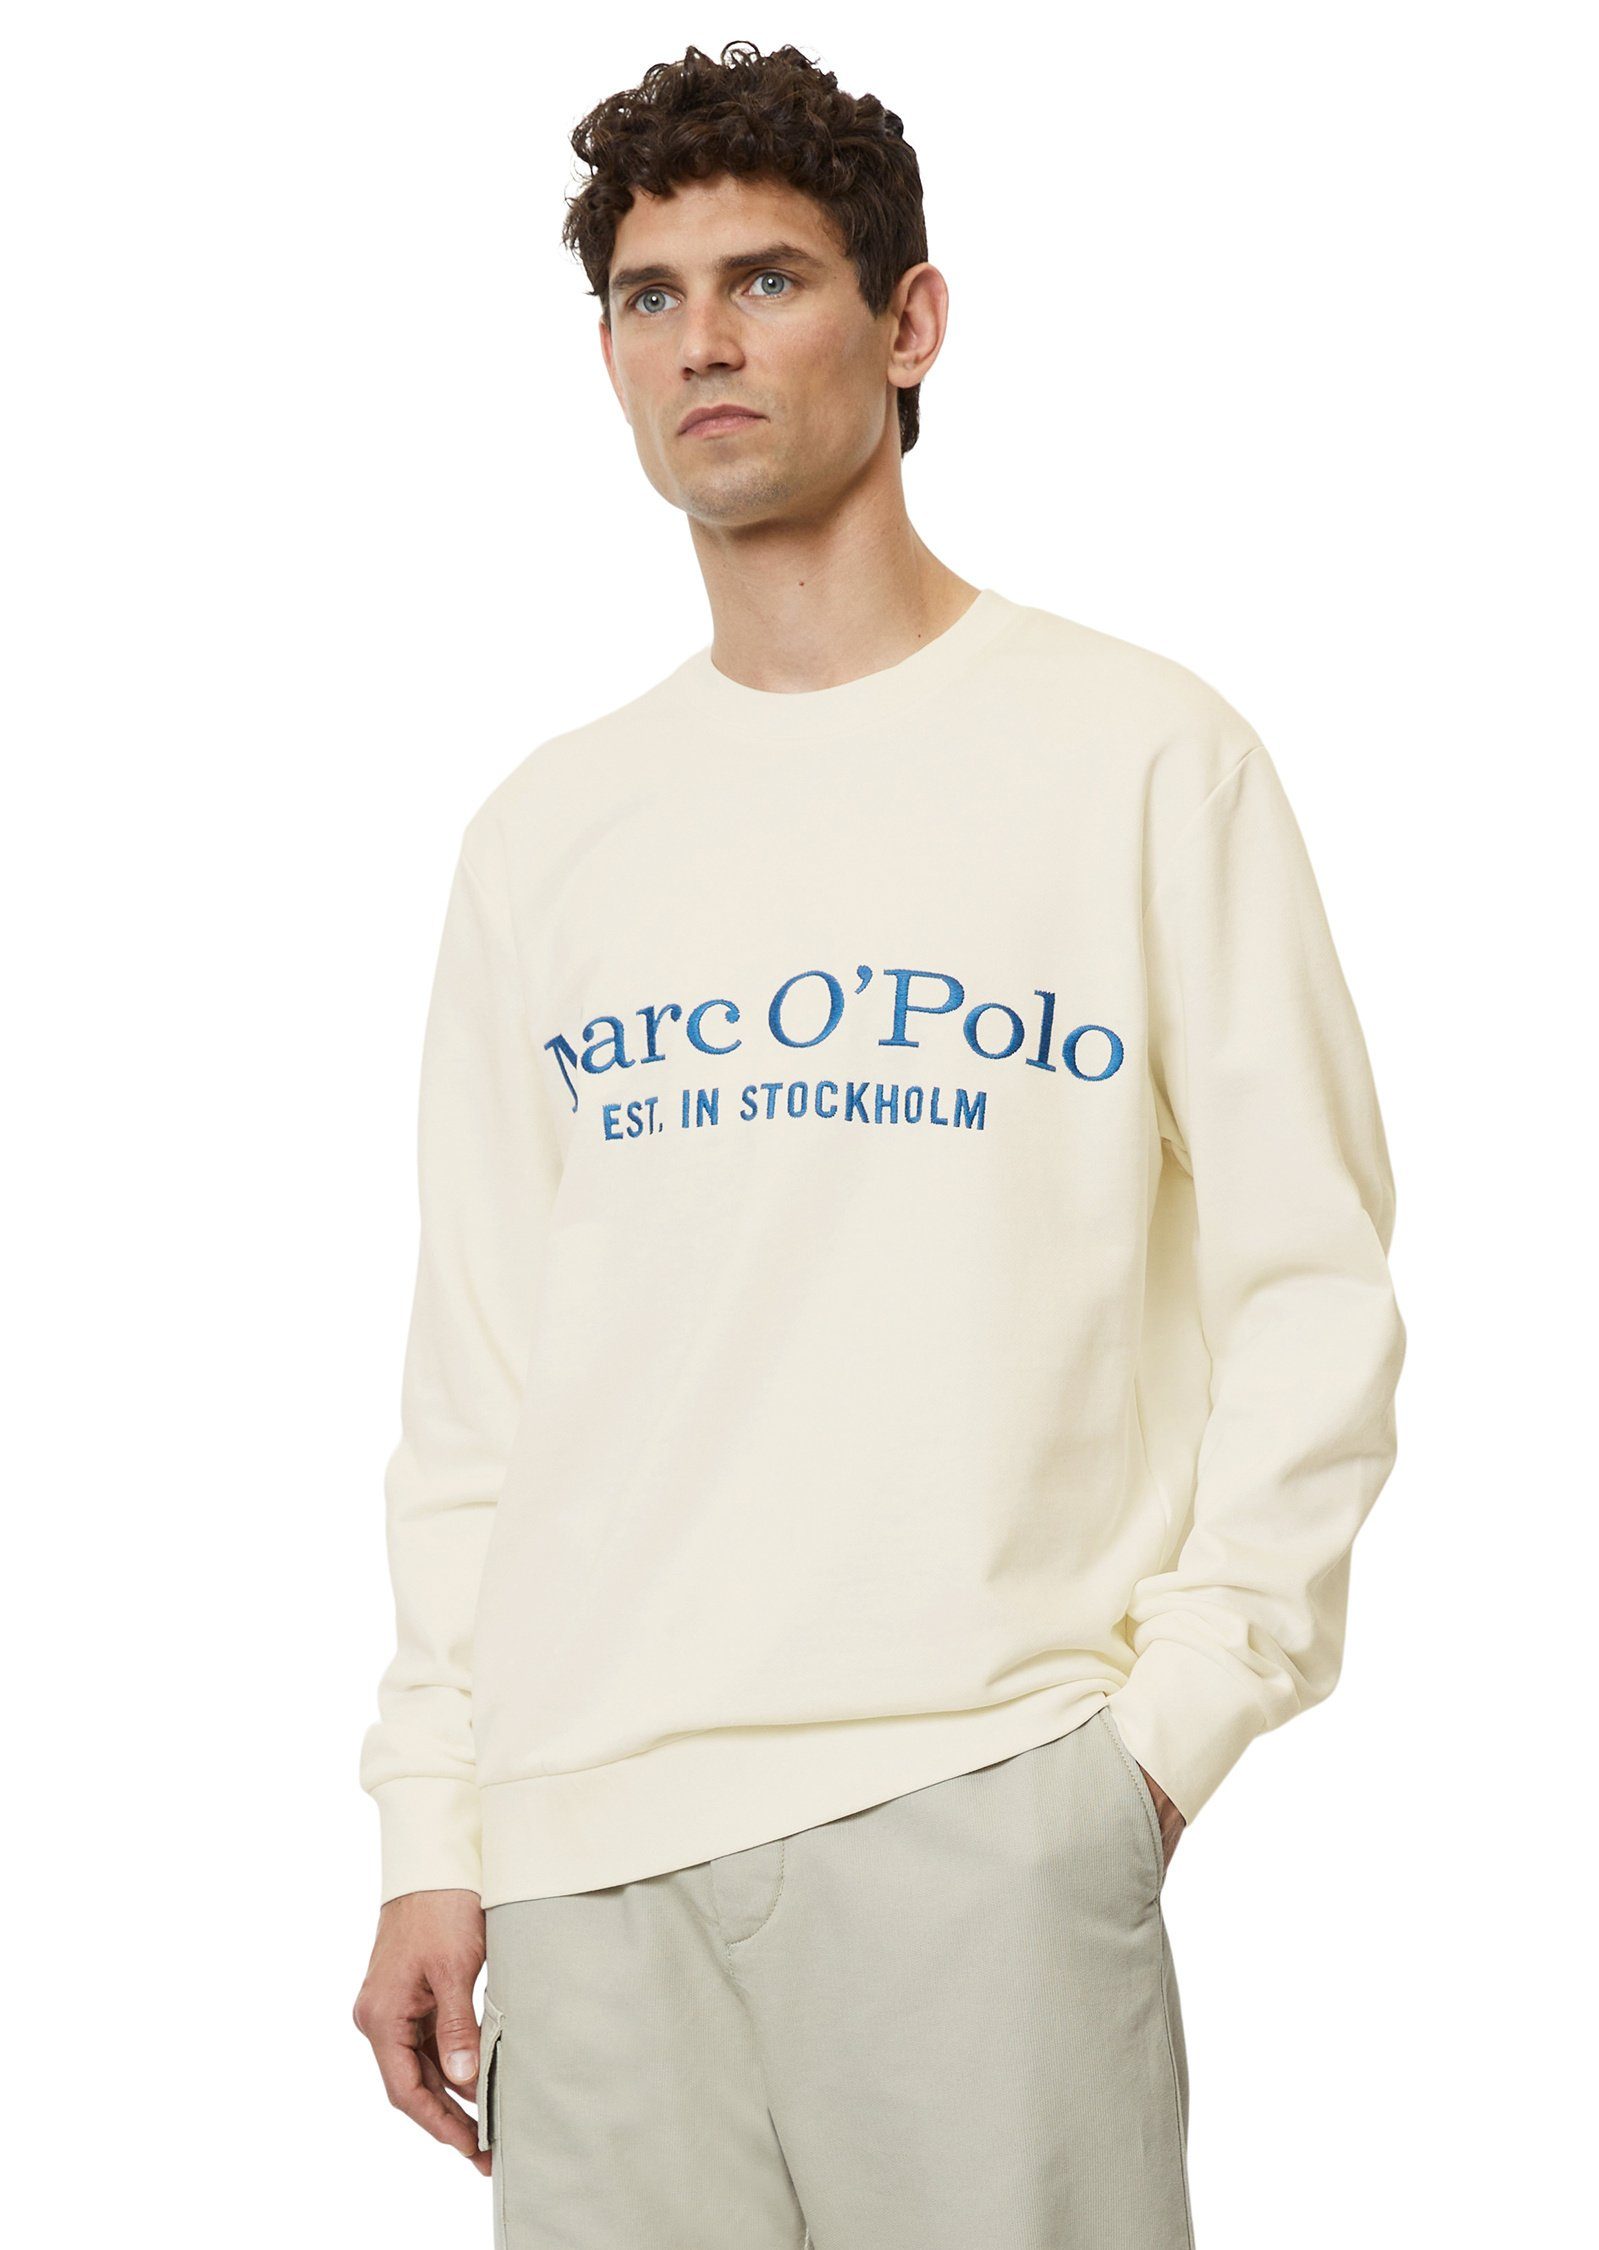 Marc O'Polo aus Sweatshirt weiß reiner Bio-Baumwolle